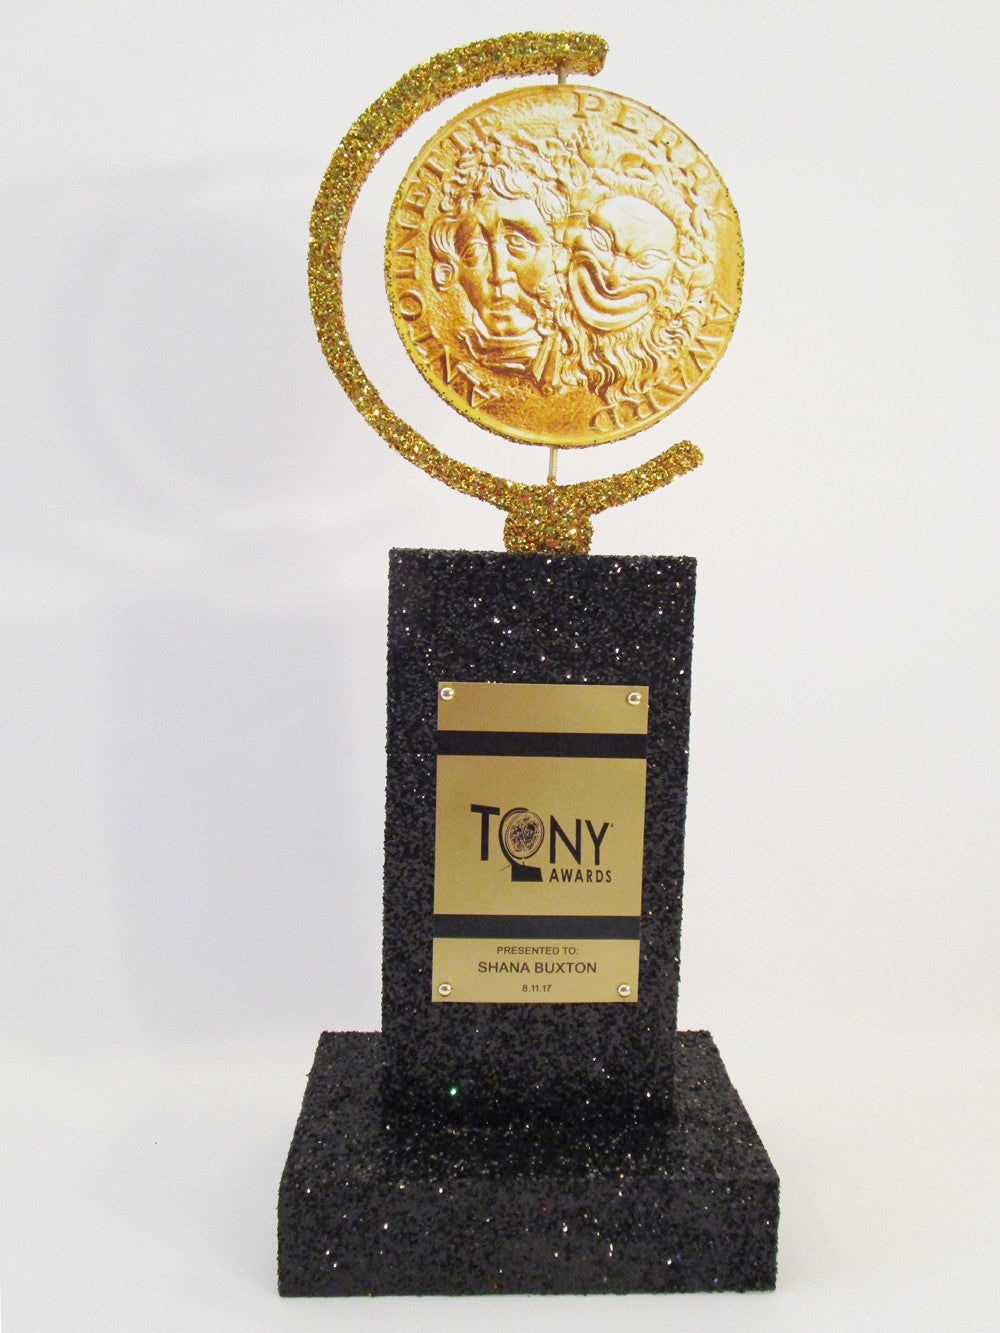 Tony award centerpiece - Designs by Ginny